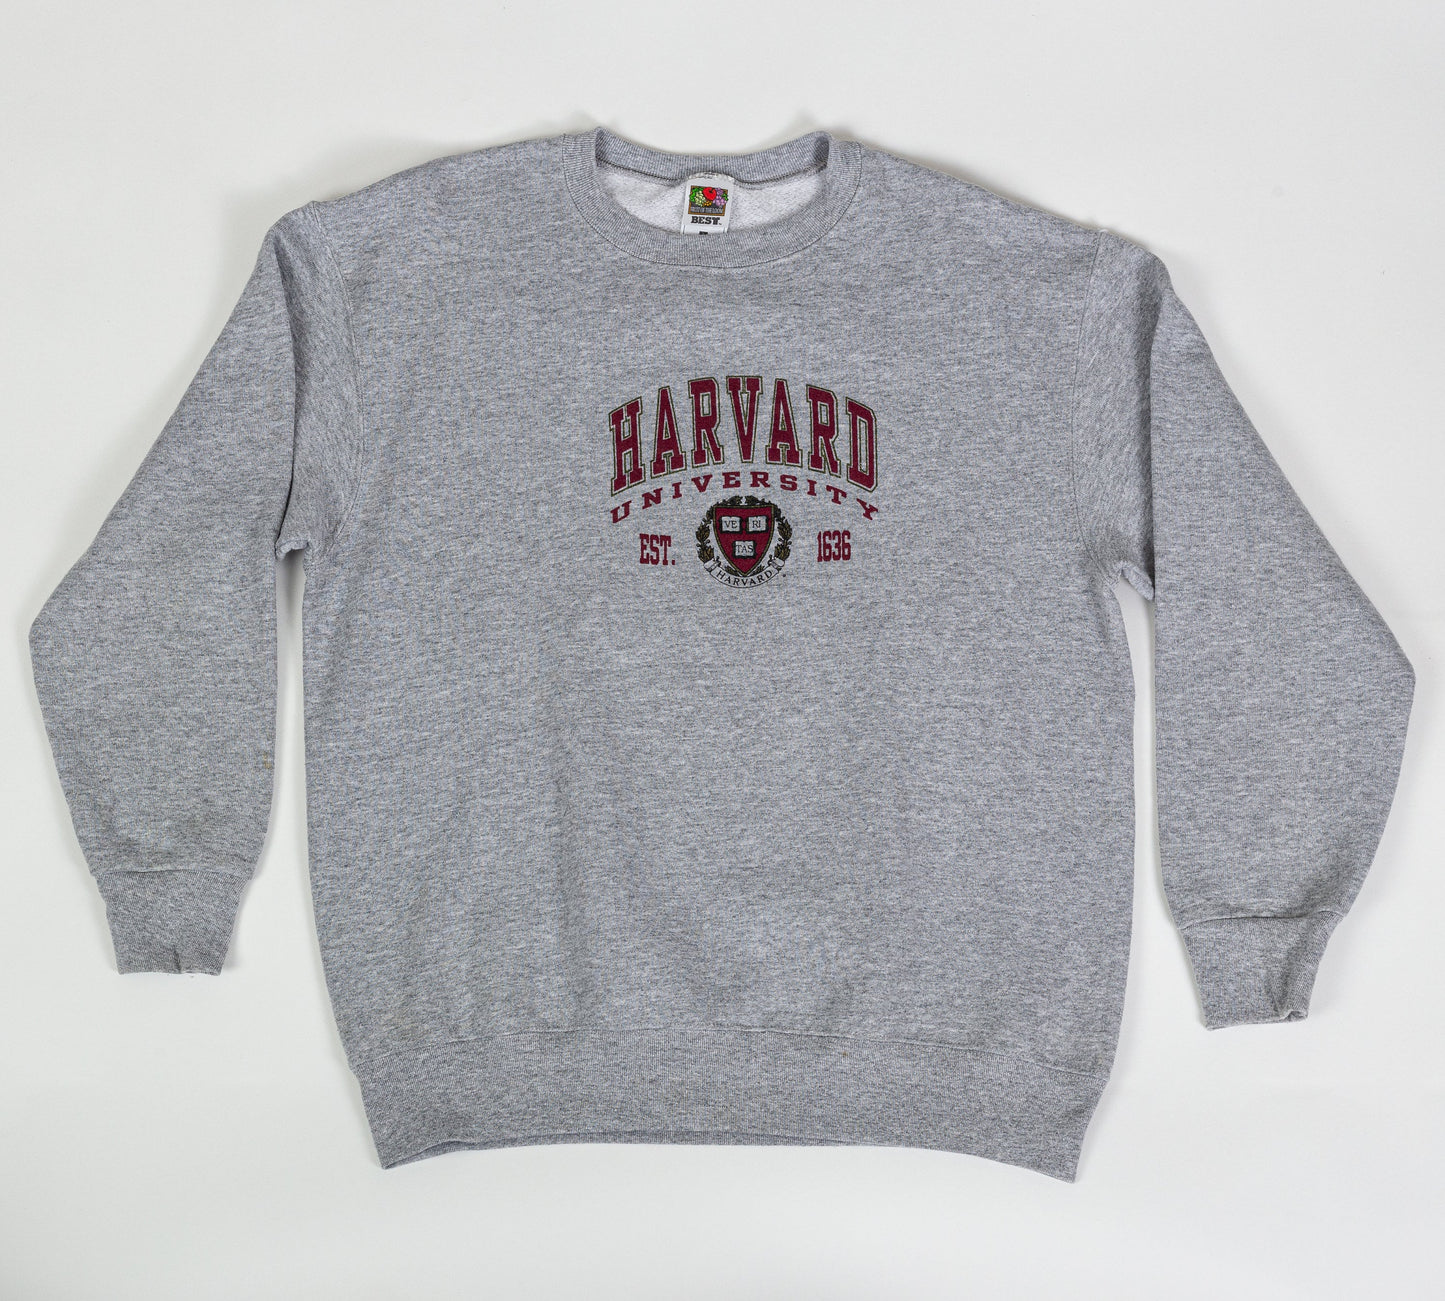 Vintage Harvard University Sweatshirt - Large 